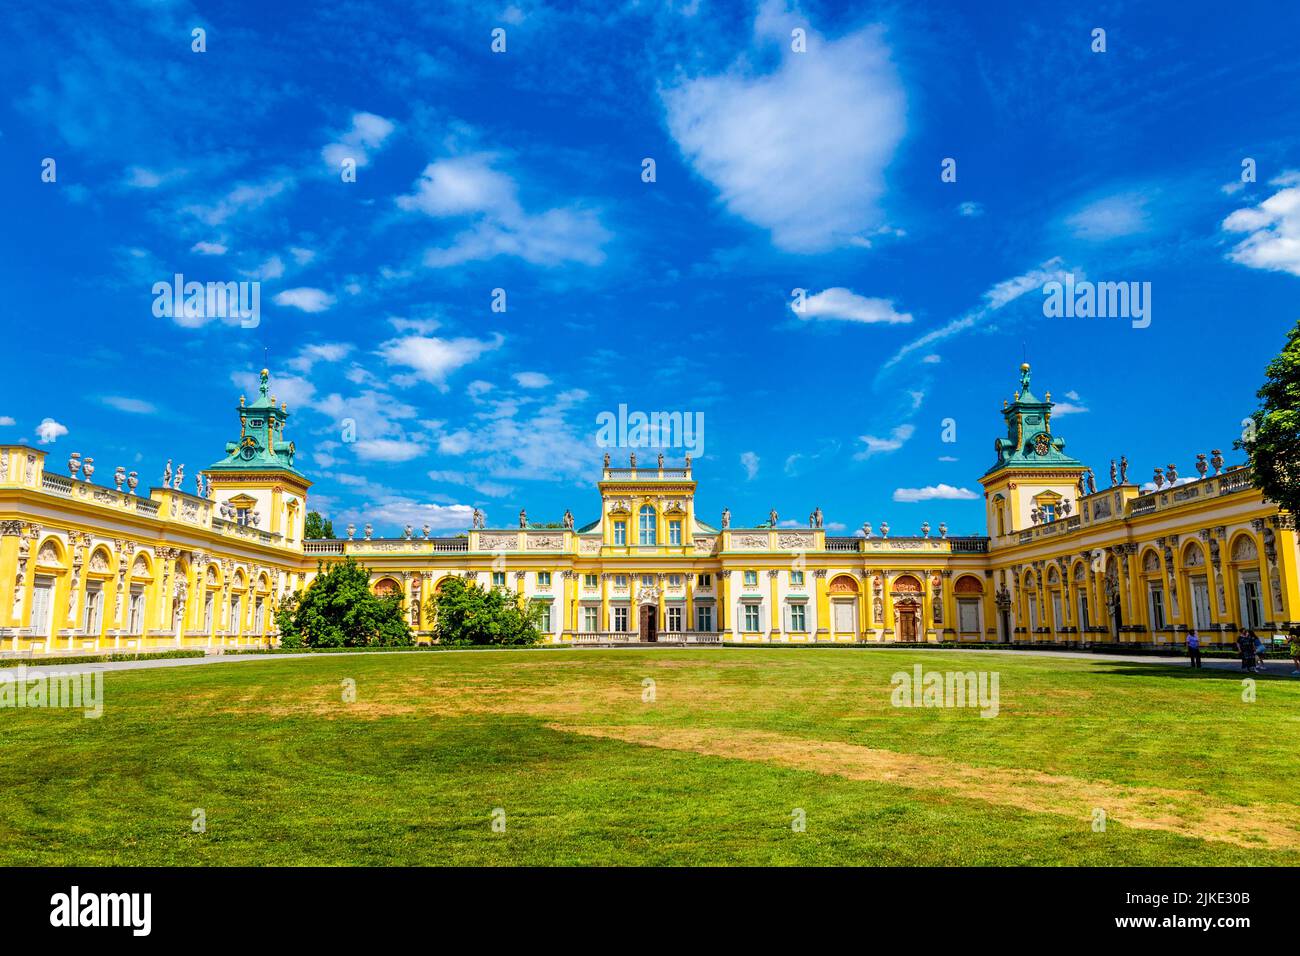 Verzierte gelbe Fassade im italienischen Stil 17. Jahrhundert barocken königlichen Wilanow-Palast, Warschau, Polen Stockfoto